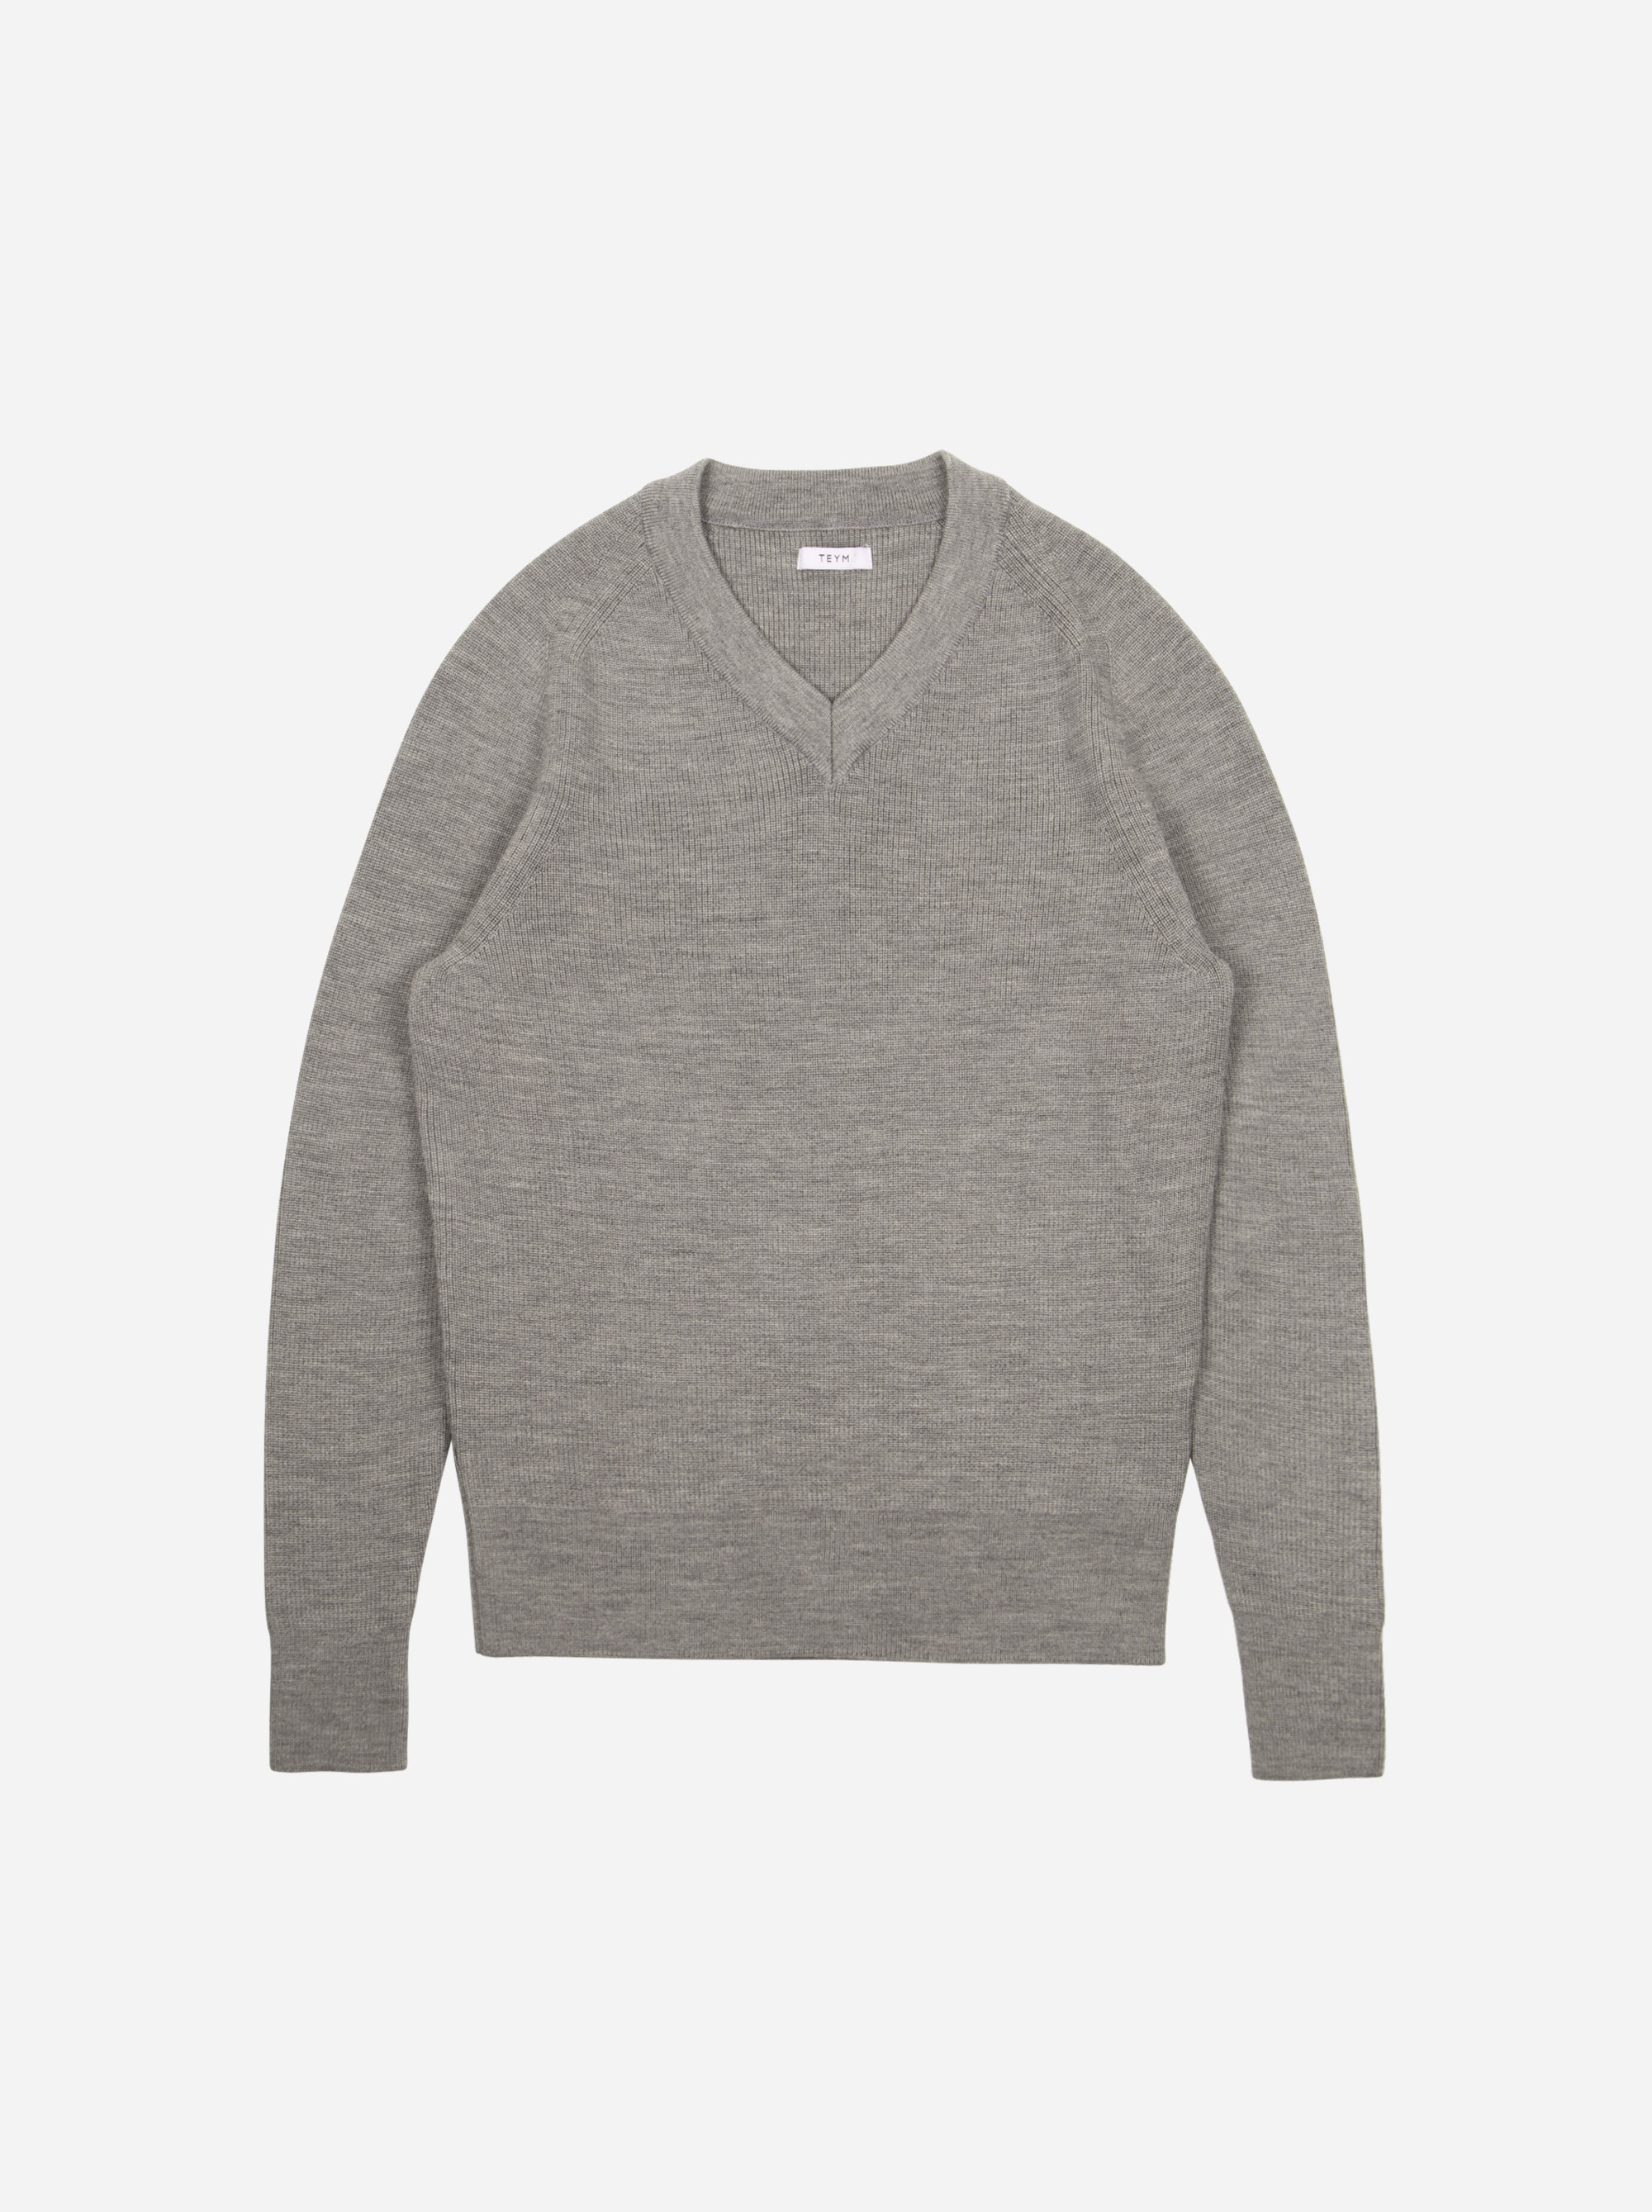 Teym - V-Neck - The Merino Sweater - Women - Grey - 5